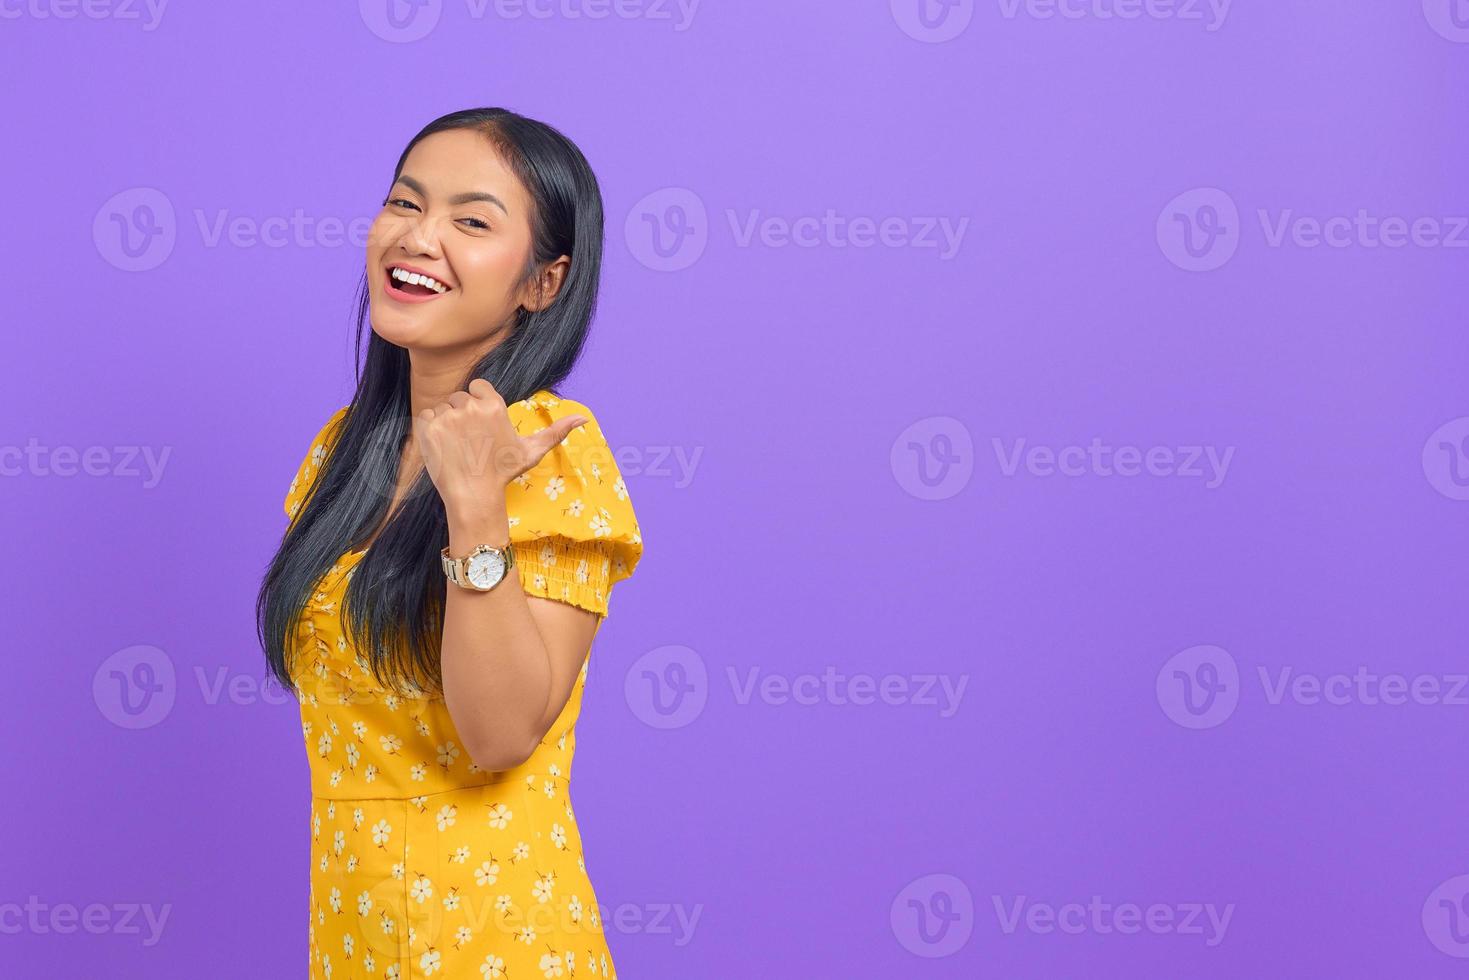 retrato, de, sonriente, joven, mujer asiática, señalar con el pulgar, en, copia, espacio, en, fondo púrpura foto